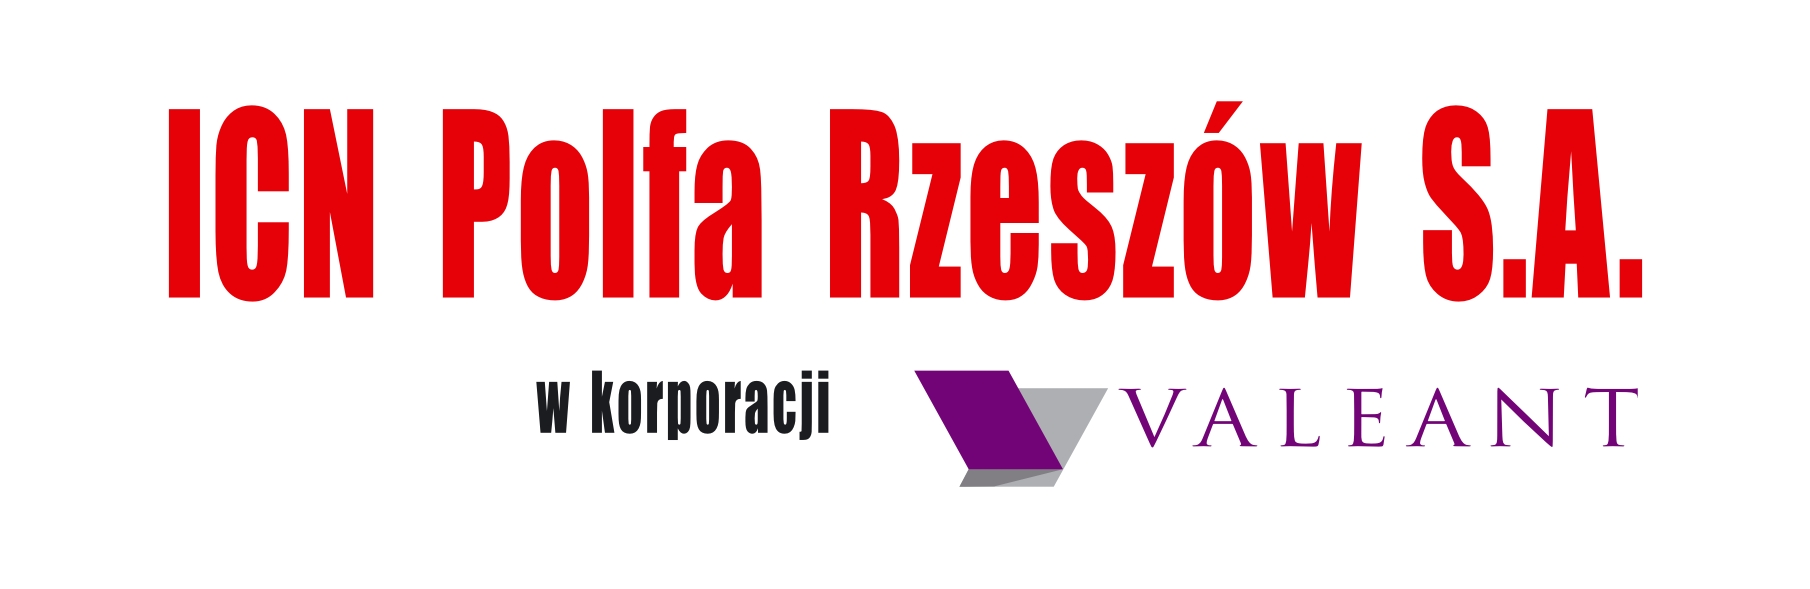 ICN Polfa Rzeszów S A  logo